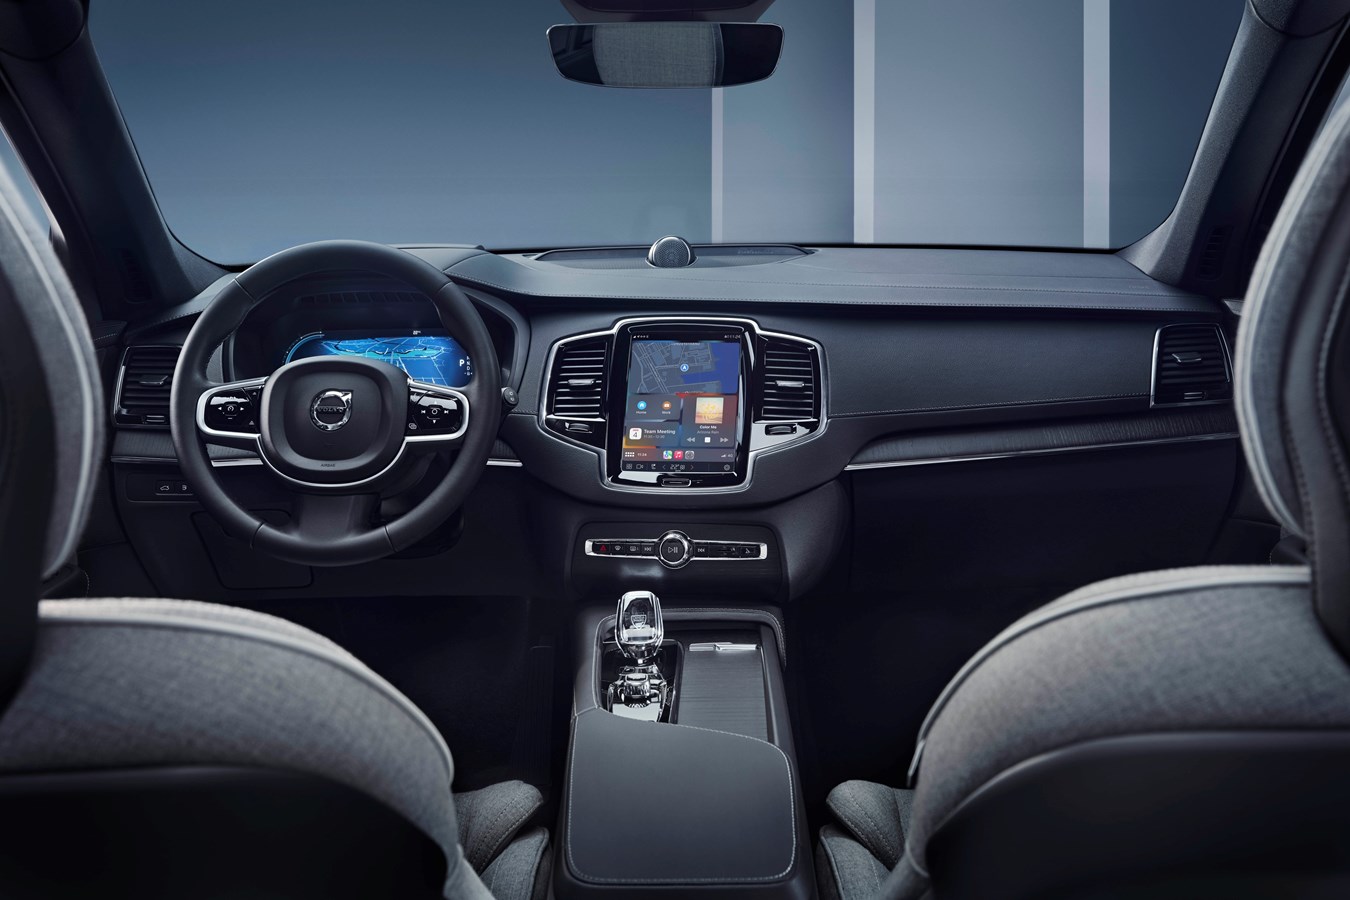 Smartphone-Einbindung per Apple CarPlay jetzt auch für Volvo Modelle mit Android Infotainment verfügbar